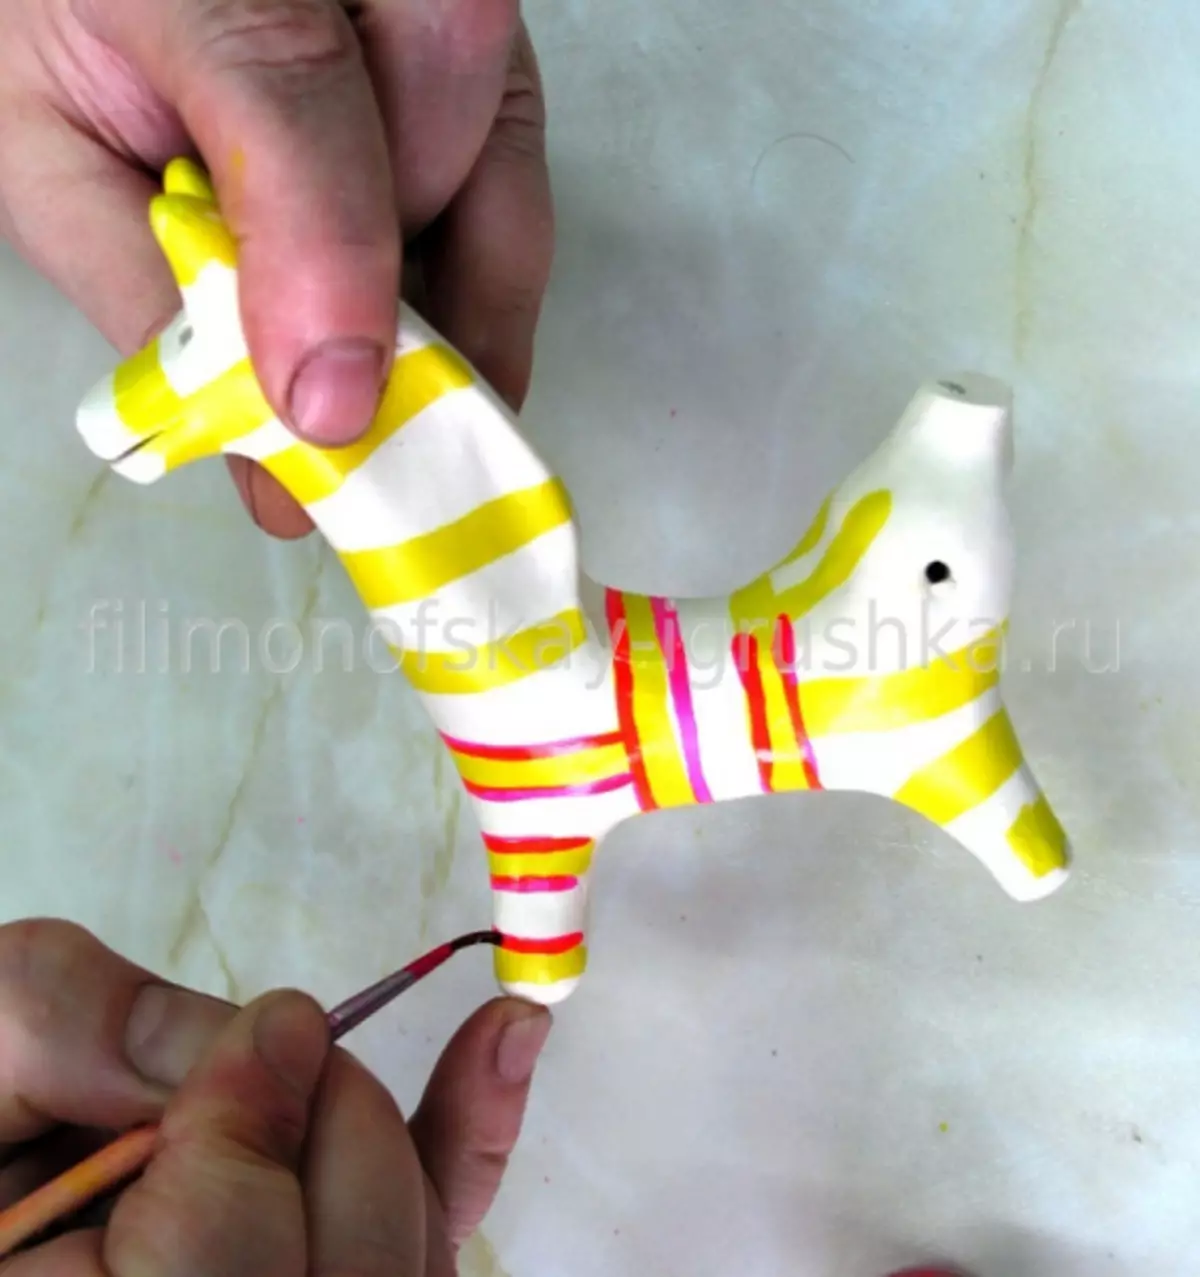 Filimonovsky skilder met patrone in fases vir kinders met templates